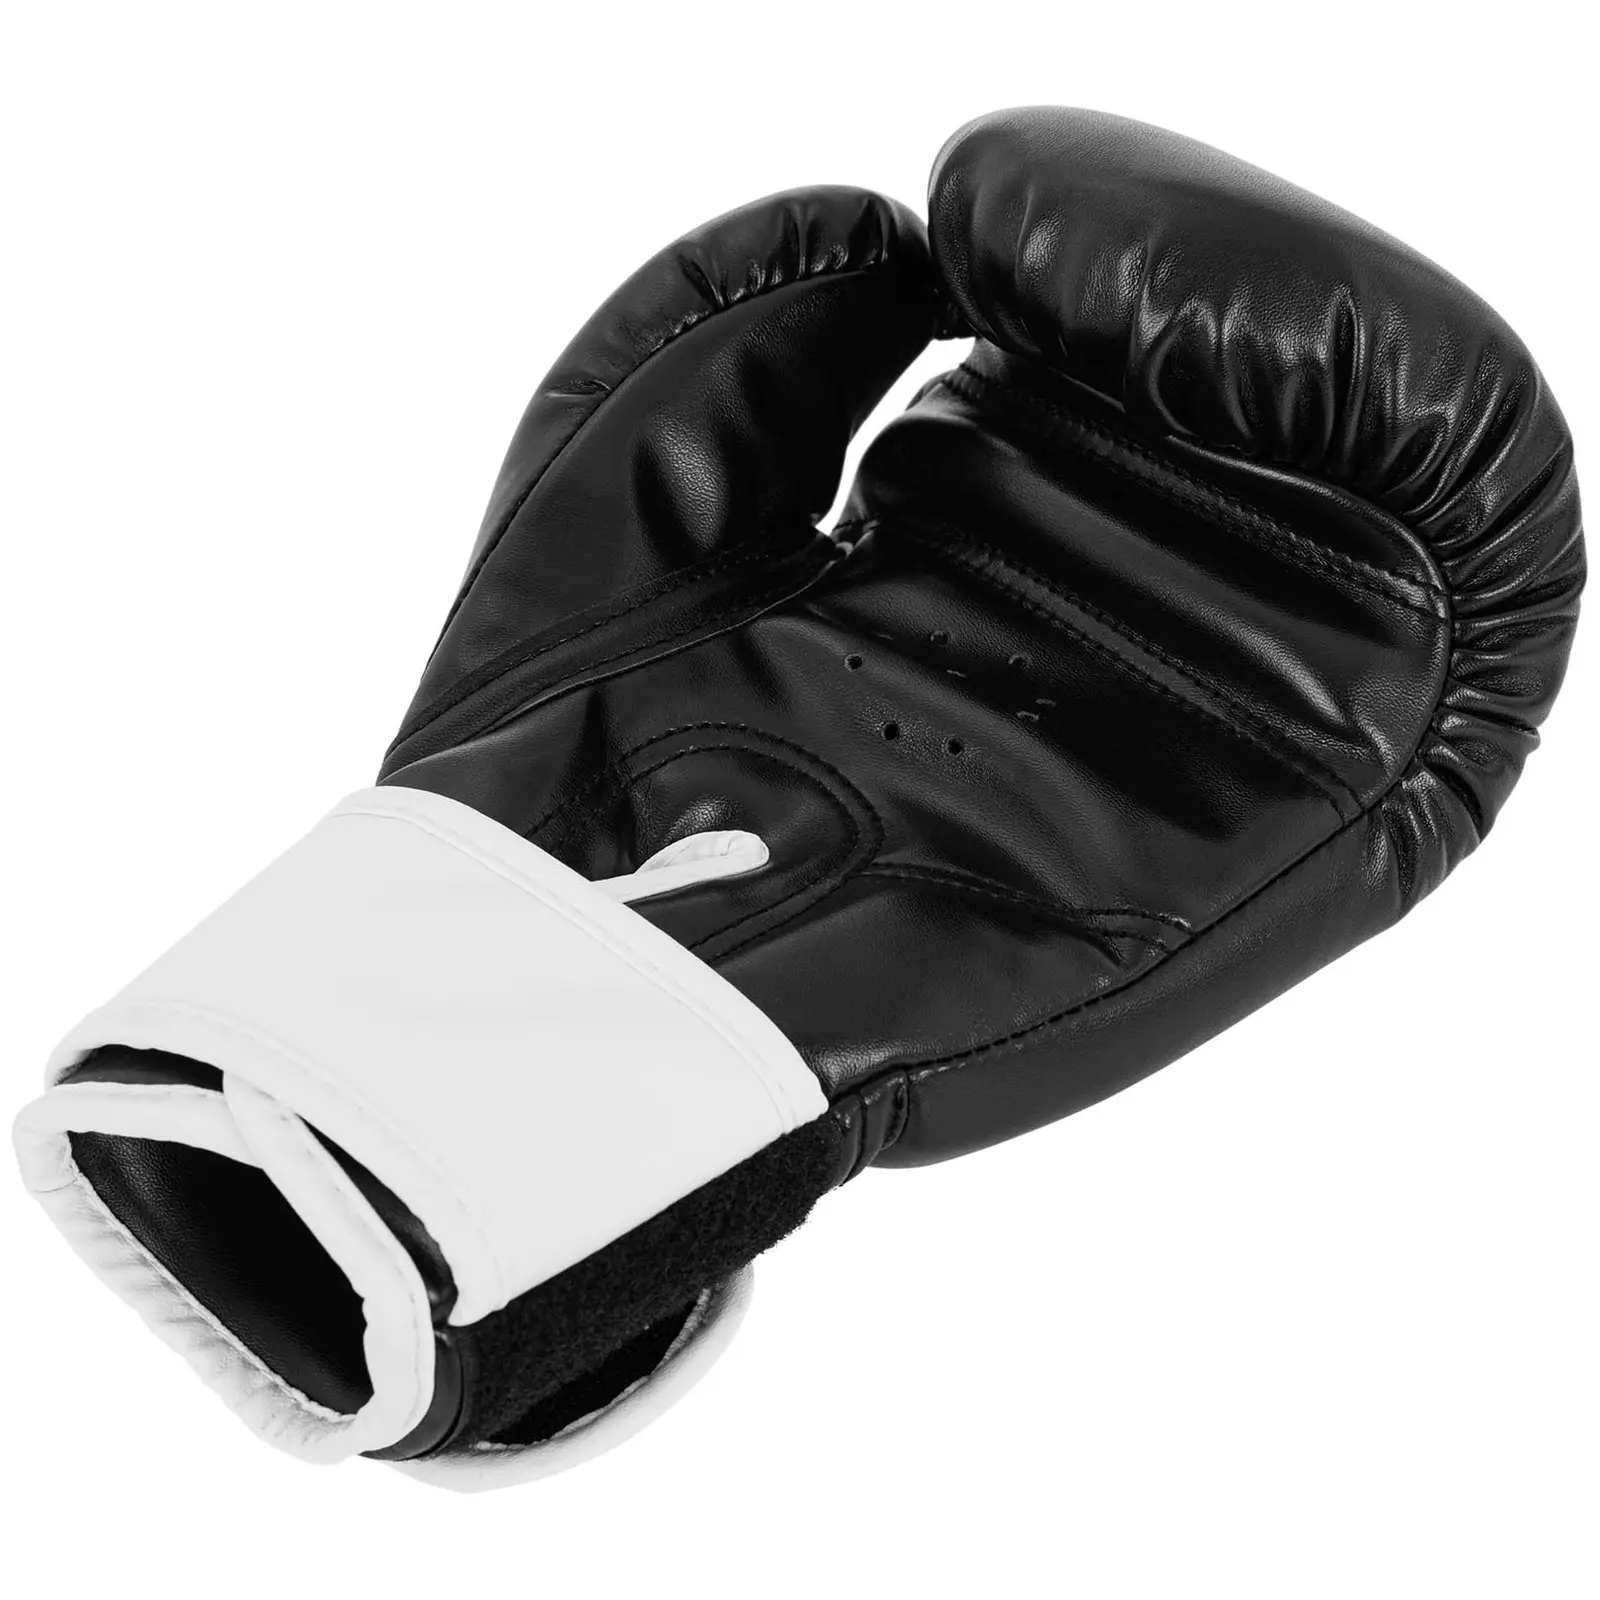 Dětské boxerské rukavice - 6 oz - černé